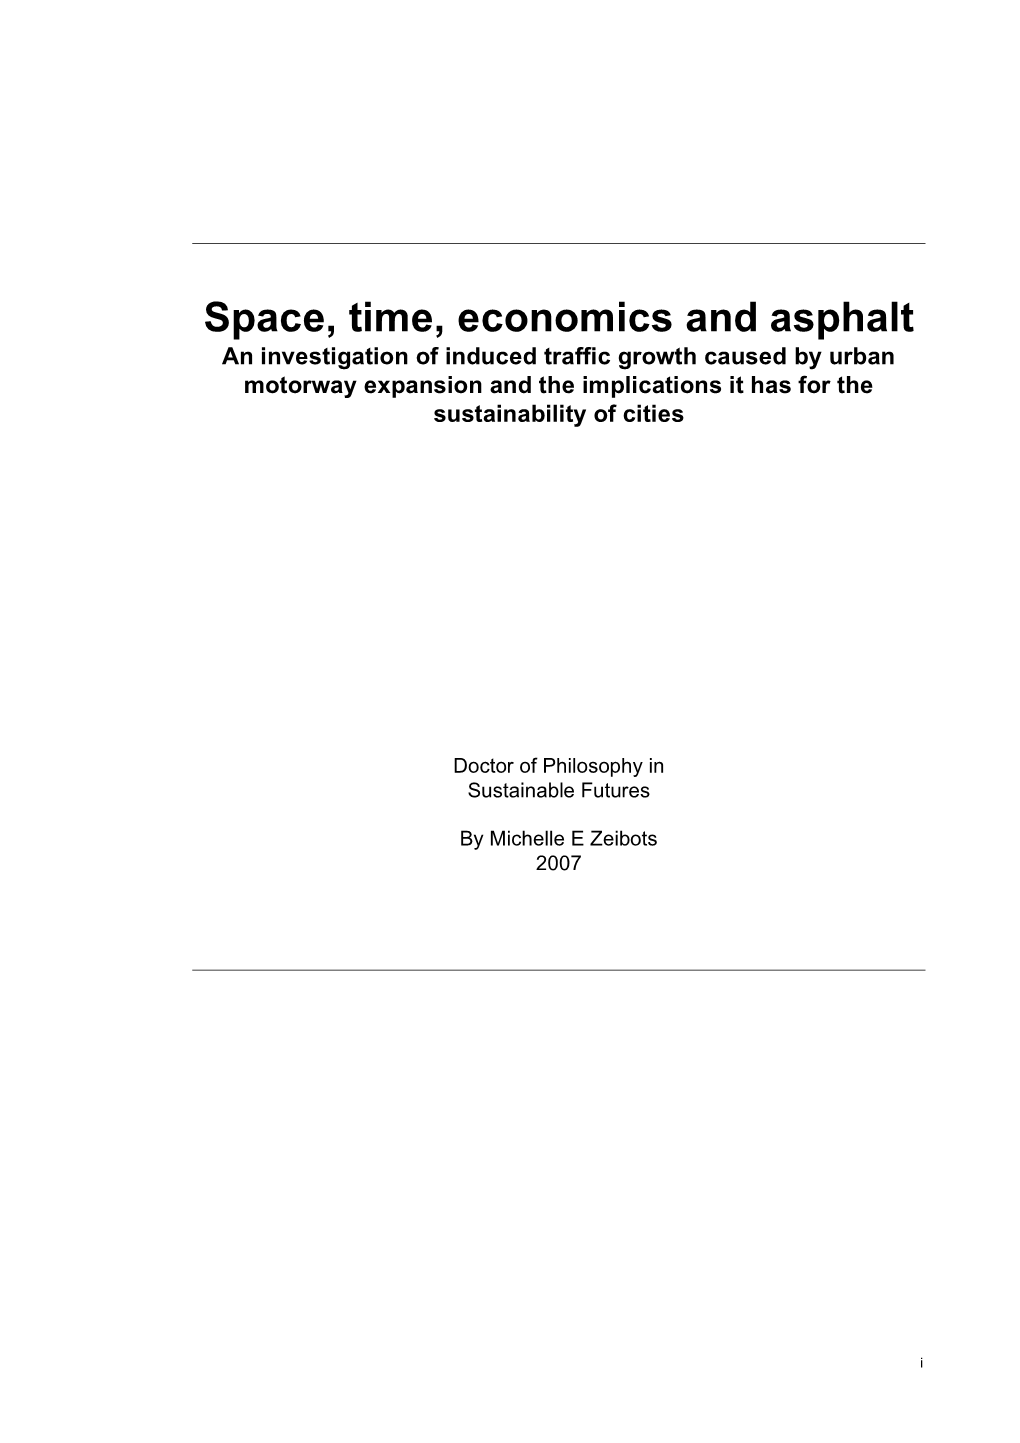 Space, Time, Economics and Asphalt